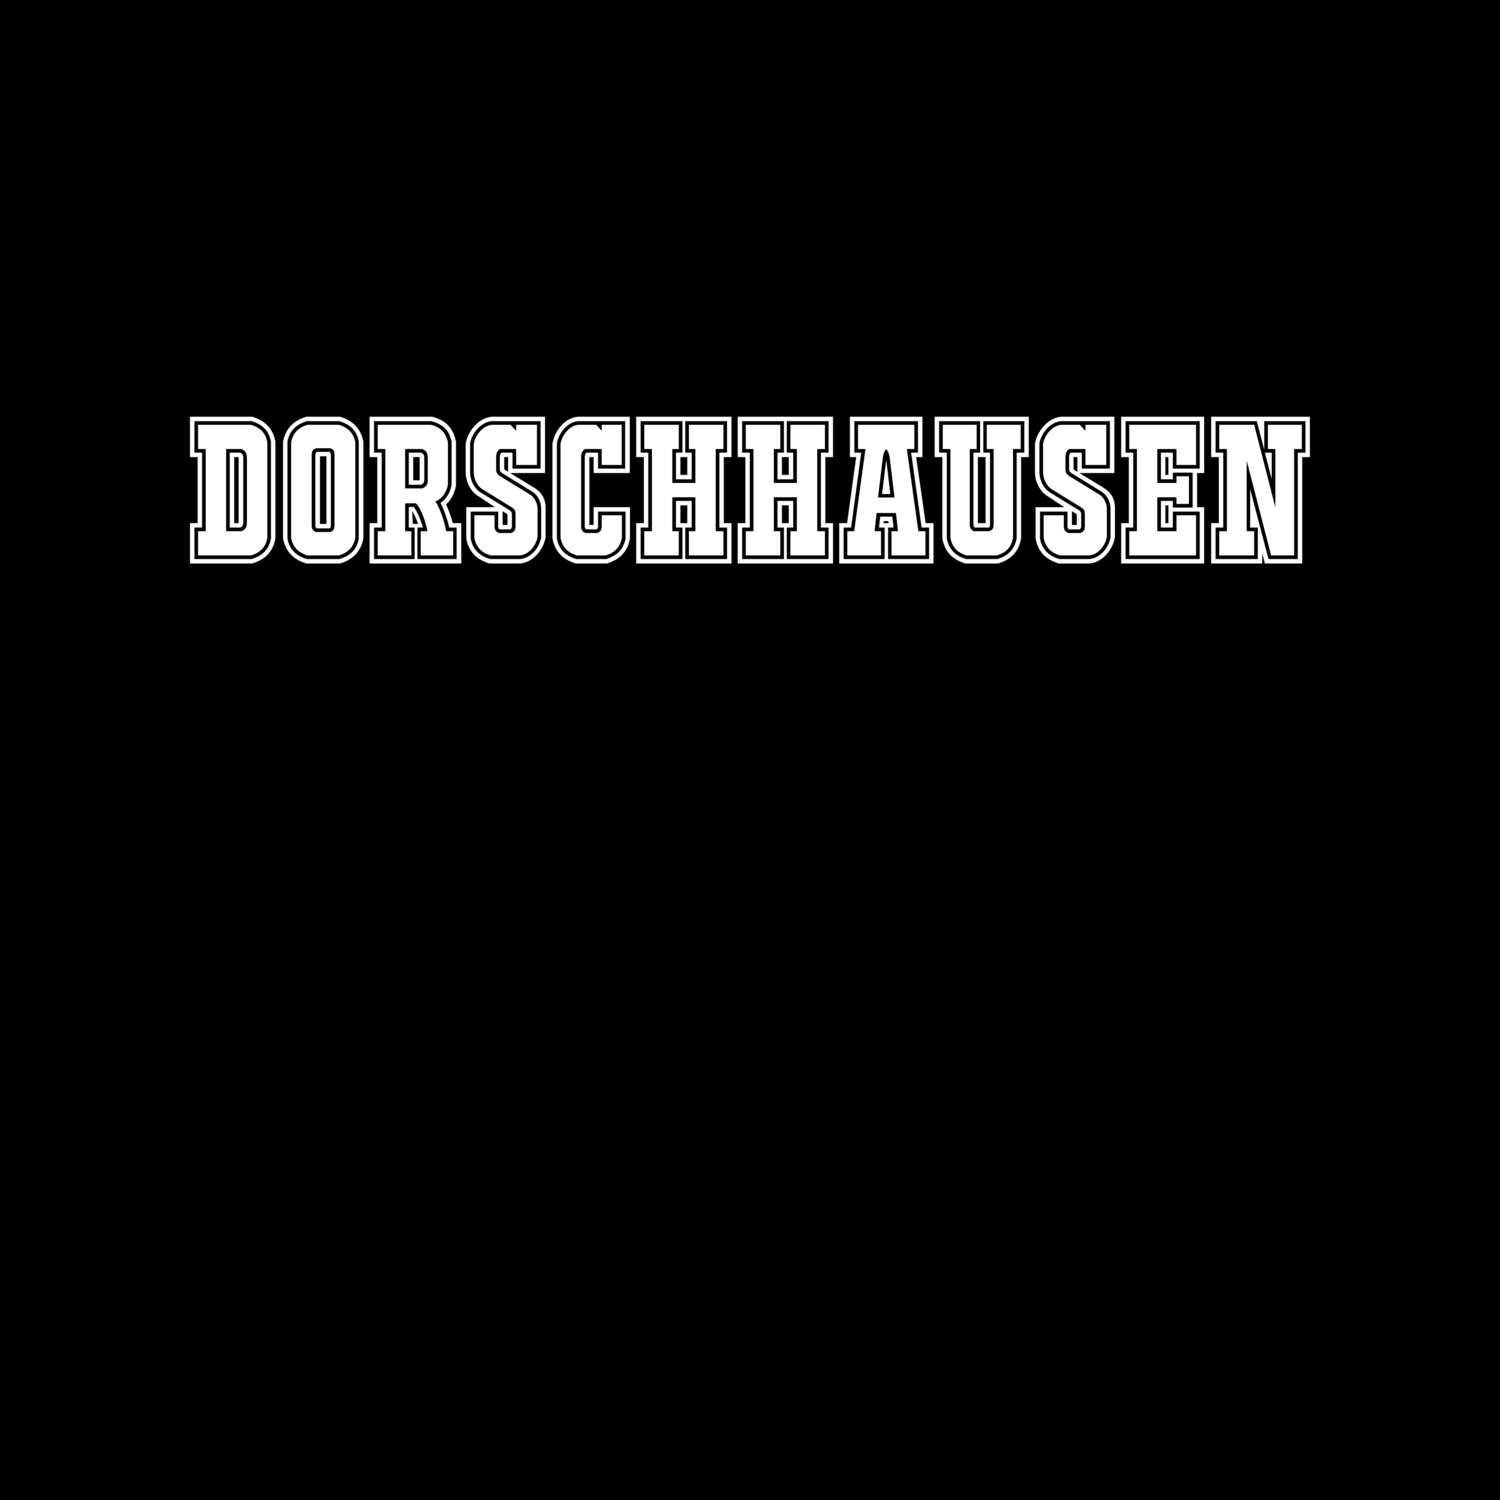 Dorschhausen T-Shirt »Classic«